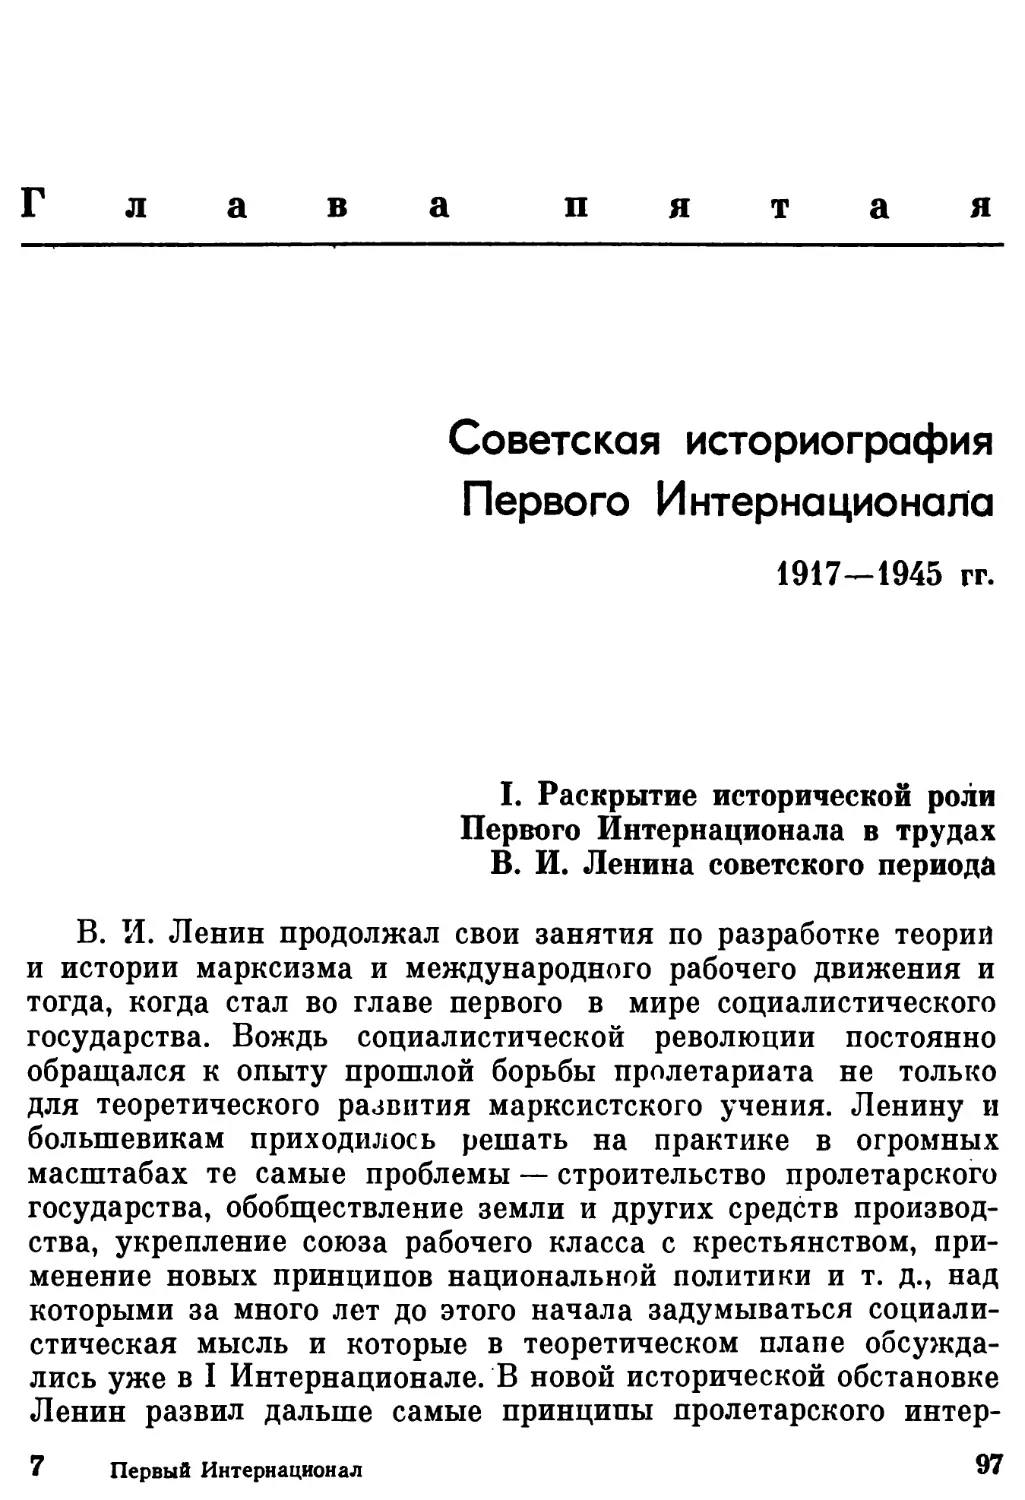 Глава пятая. Советская историография Первого Интернационала в 1917 - 1945 гг.